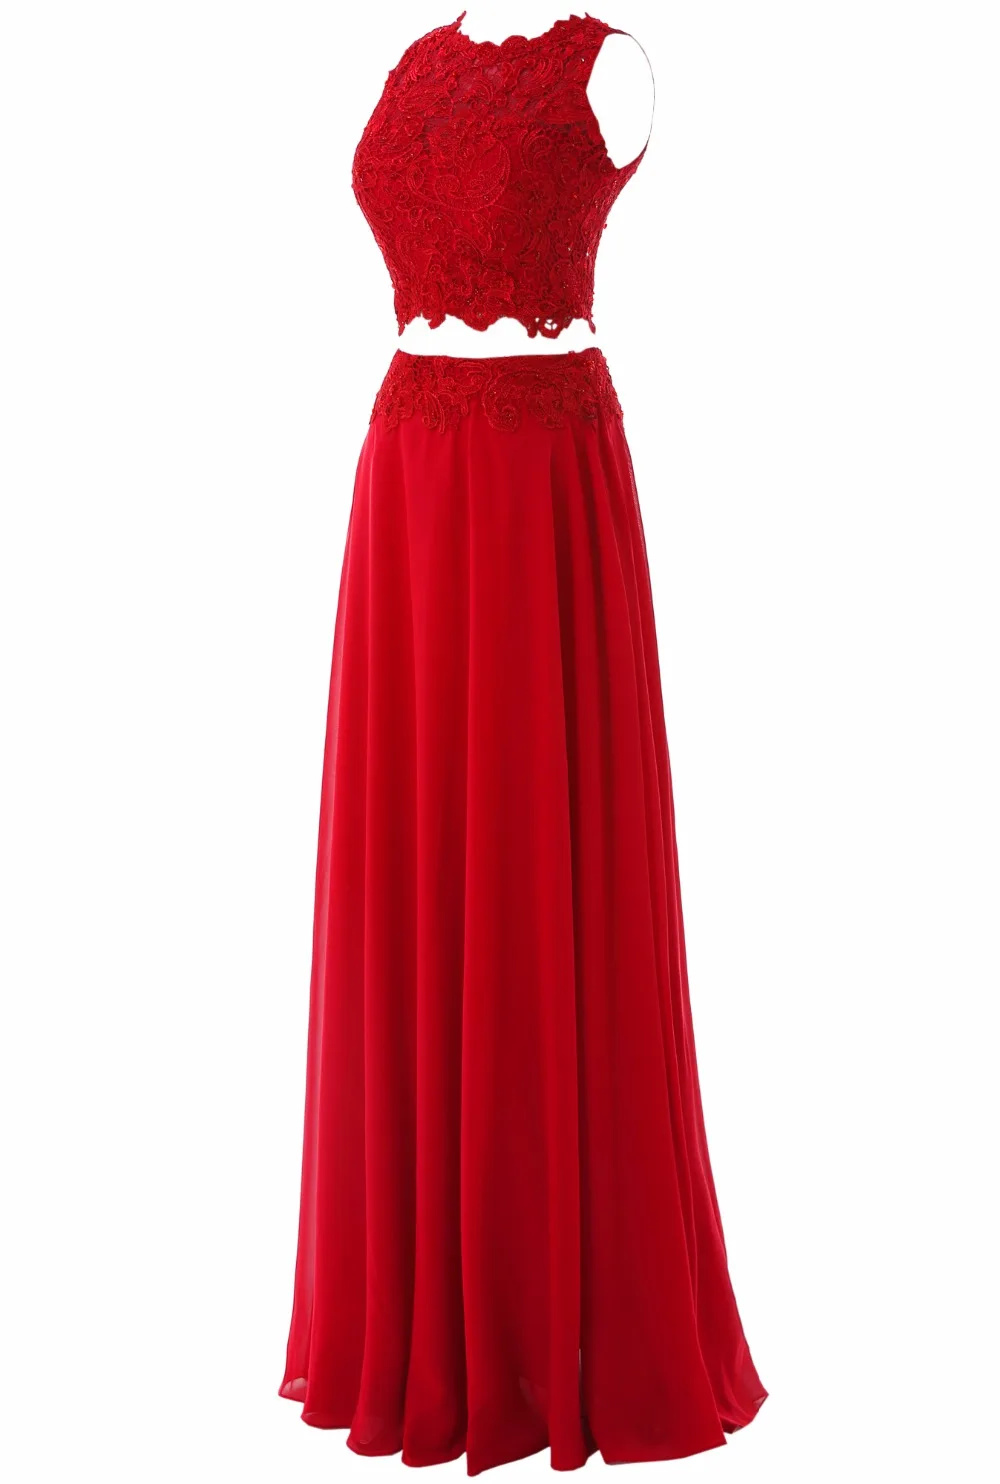 ТРАПЕЦИЕВИДНОЕ шифоновое длинное платье с круглым вырезом из двух частей для выпускного вечера Красные кружевные аппликации для вечернего платья vestido de fiesta vestidos SL-P329